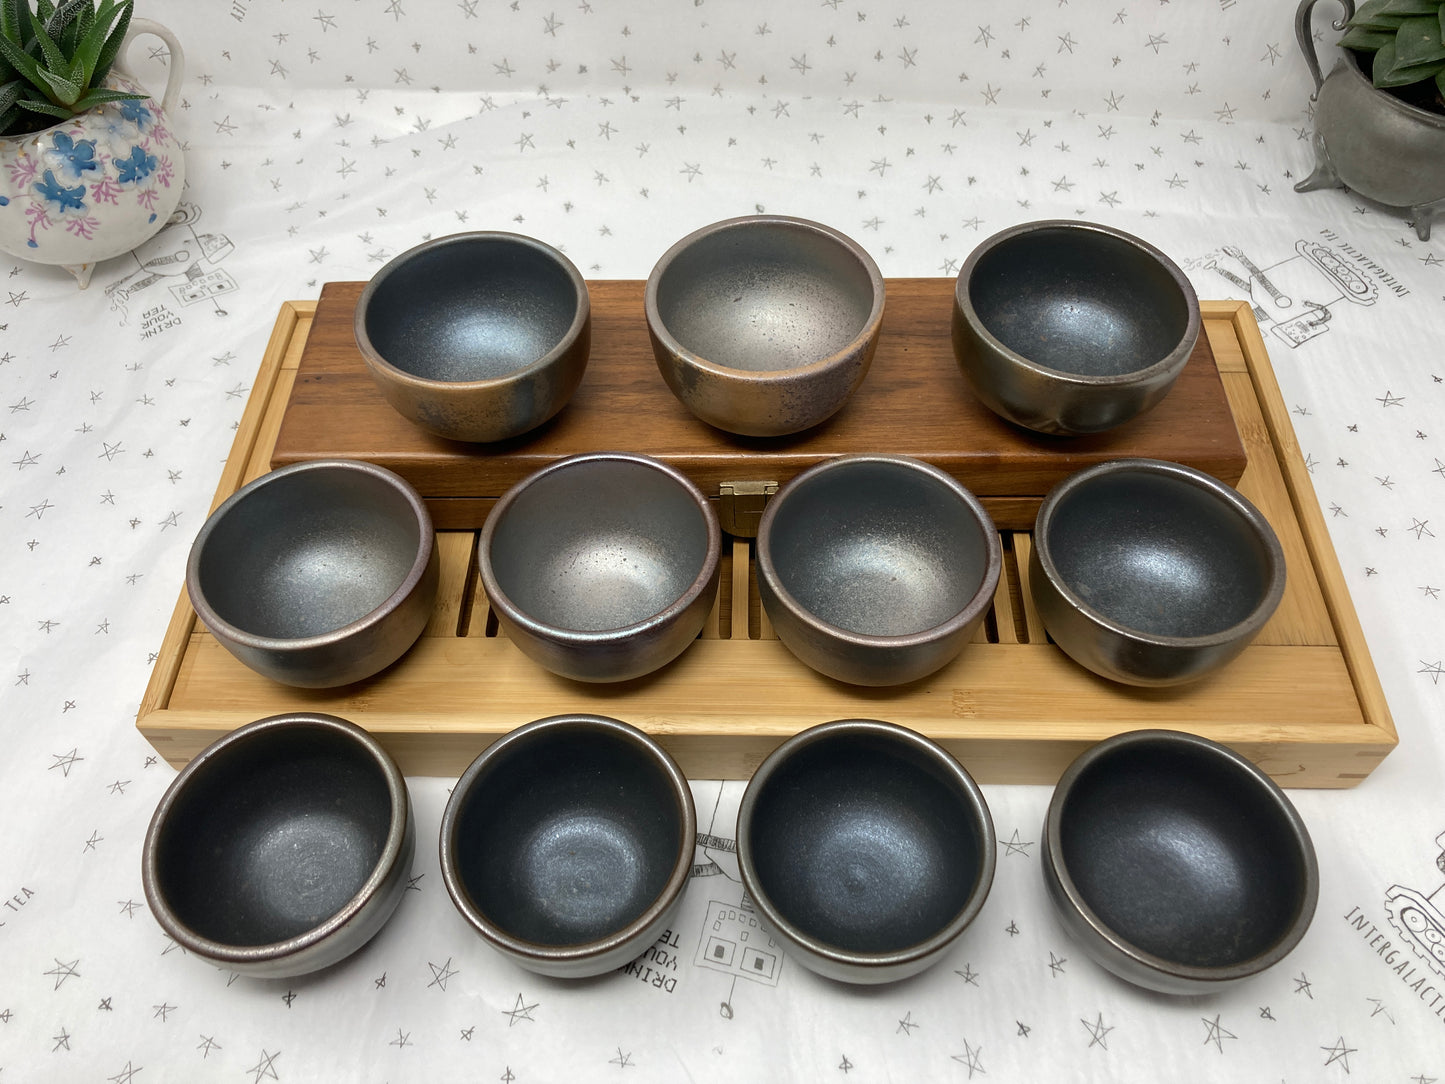 Jianshui Zitao Wood Fired Cups